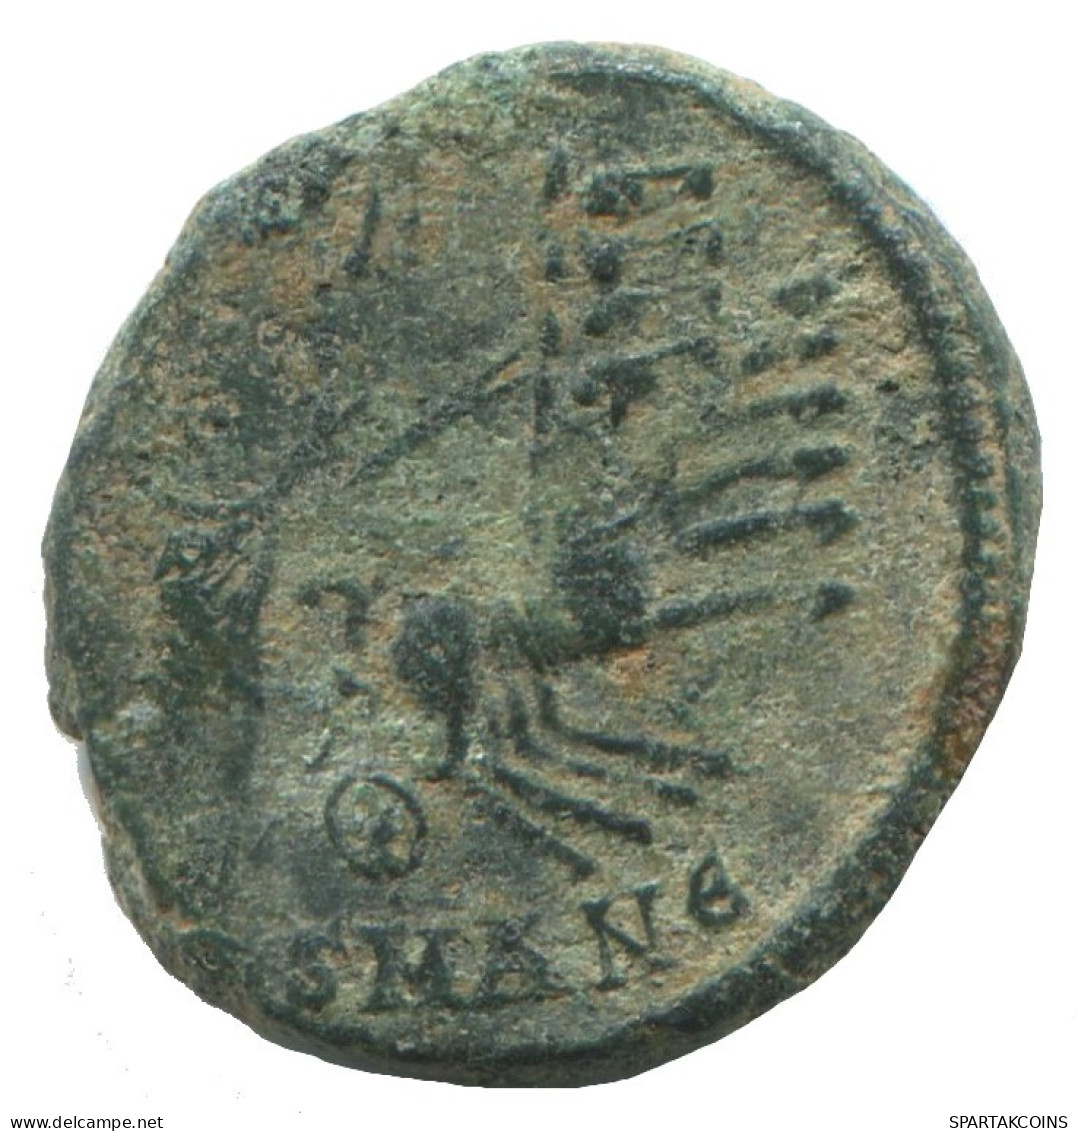 CONSTANTIUS II ANTIOCH SMANE AD347 FEL TEMP REPARATIO 1.7g/15m #ANN1465.10.E.A - El Imperio Christiano (307 / 363)